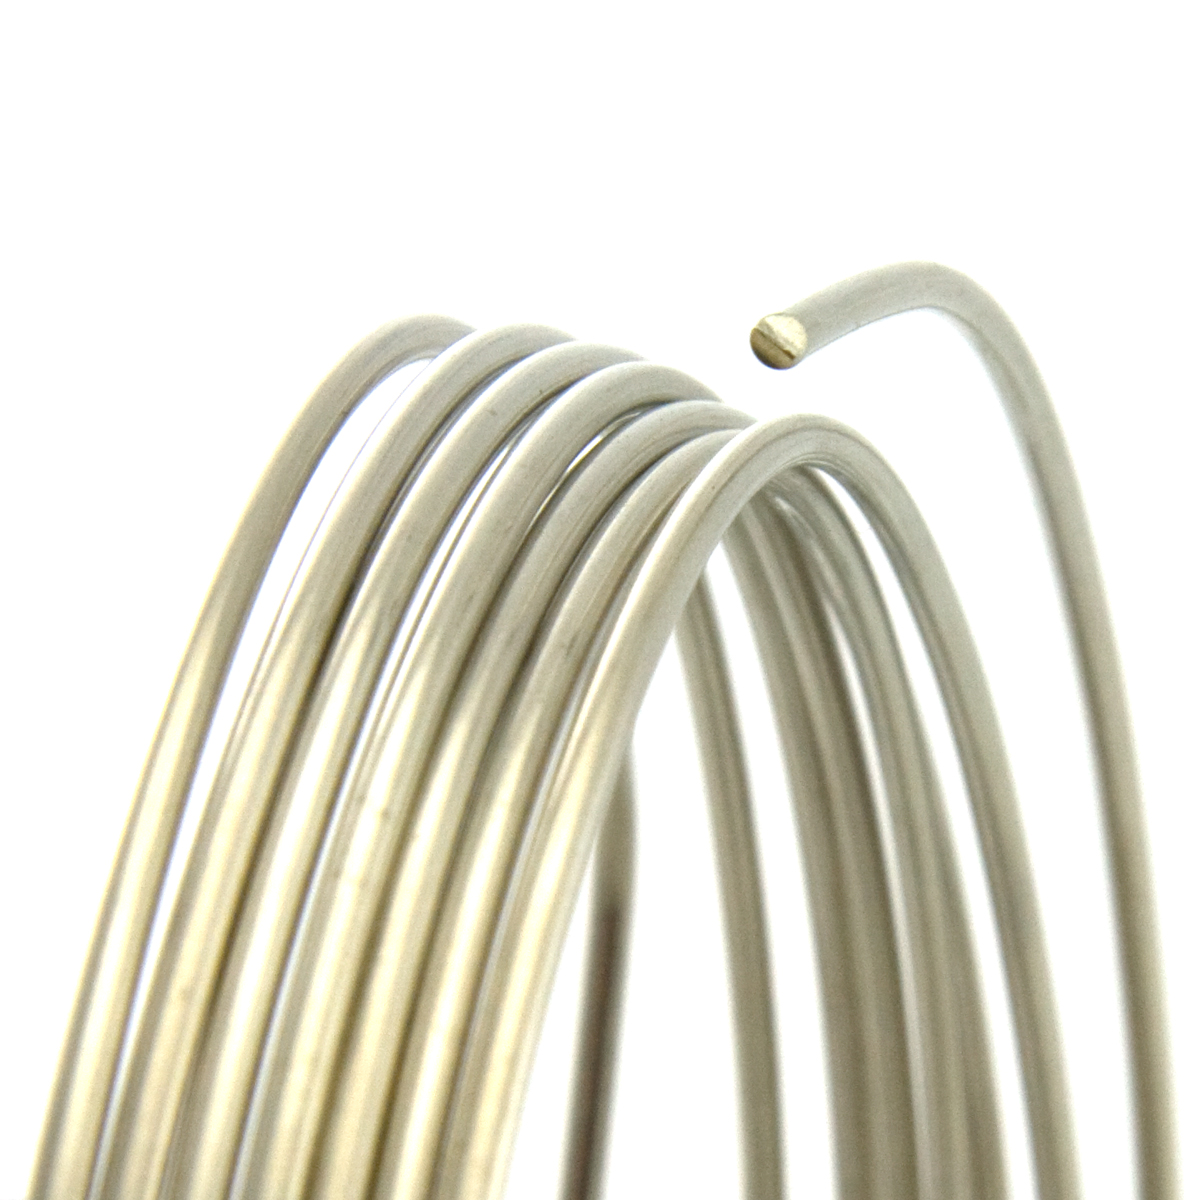 20 Gauge Round Half Hard Nickel Silver Wire: Jewelry Making Supplies, Instructions